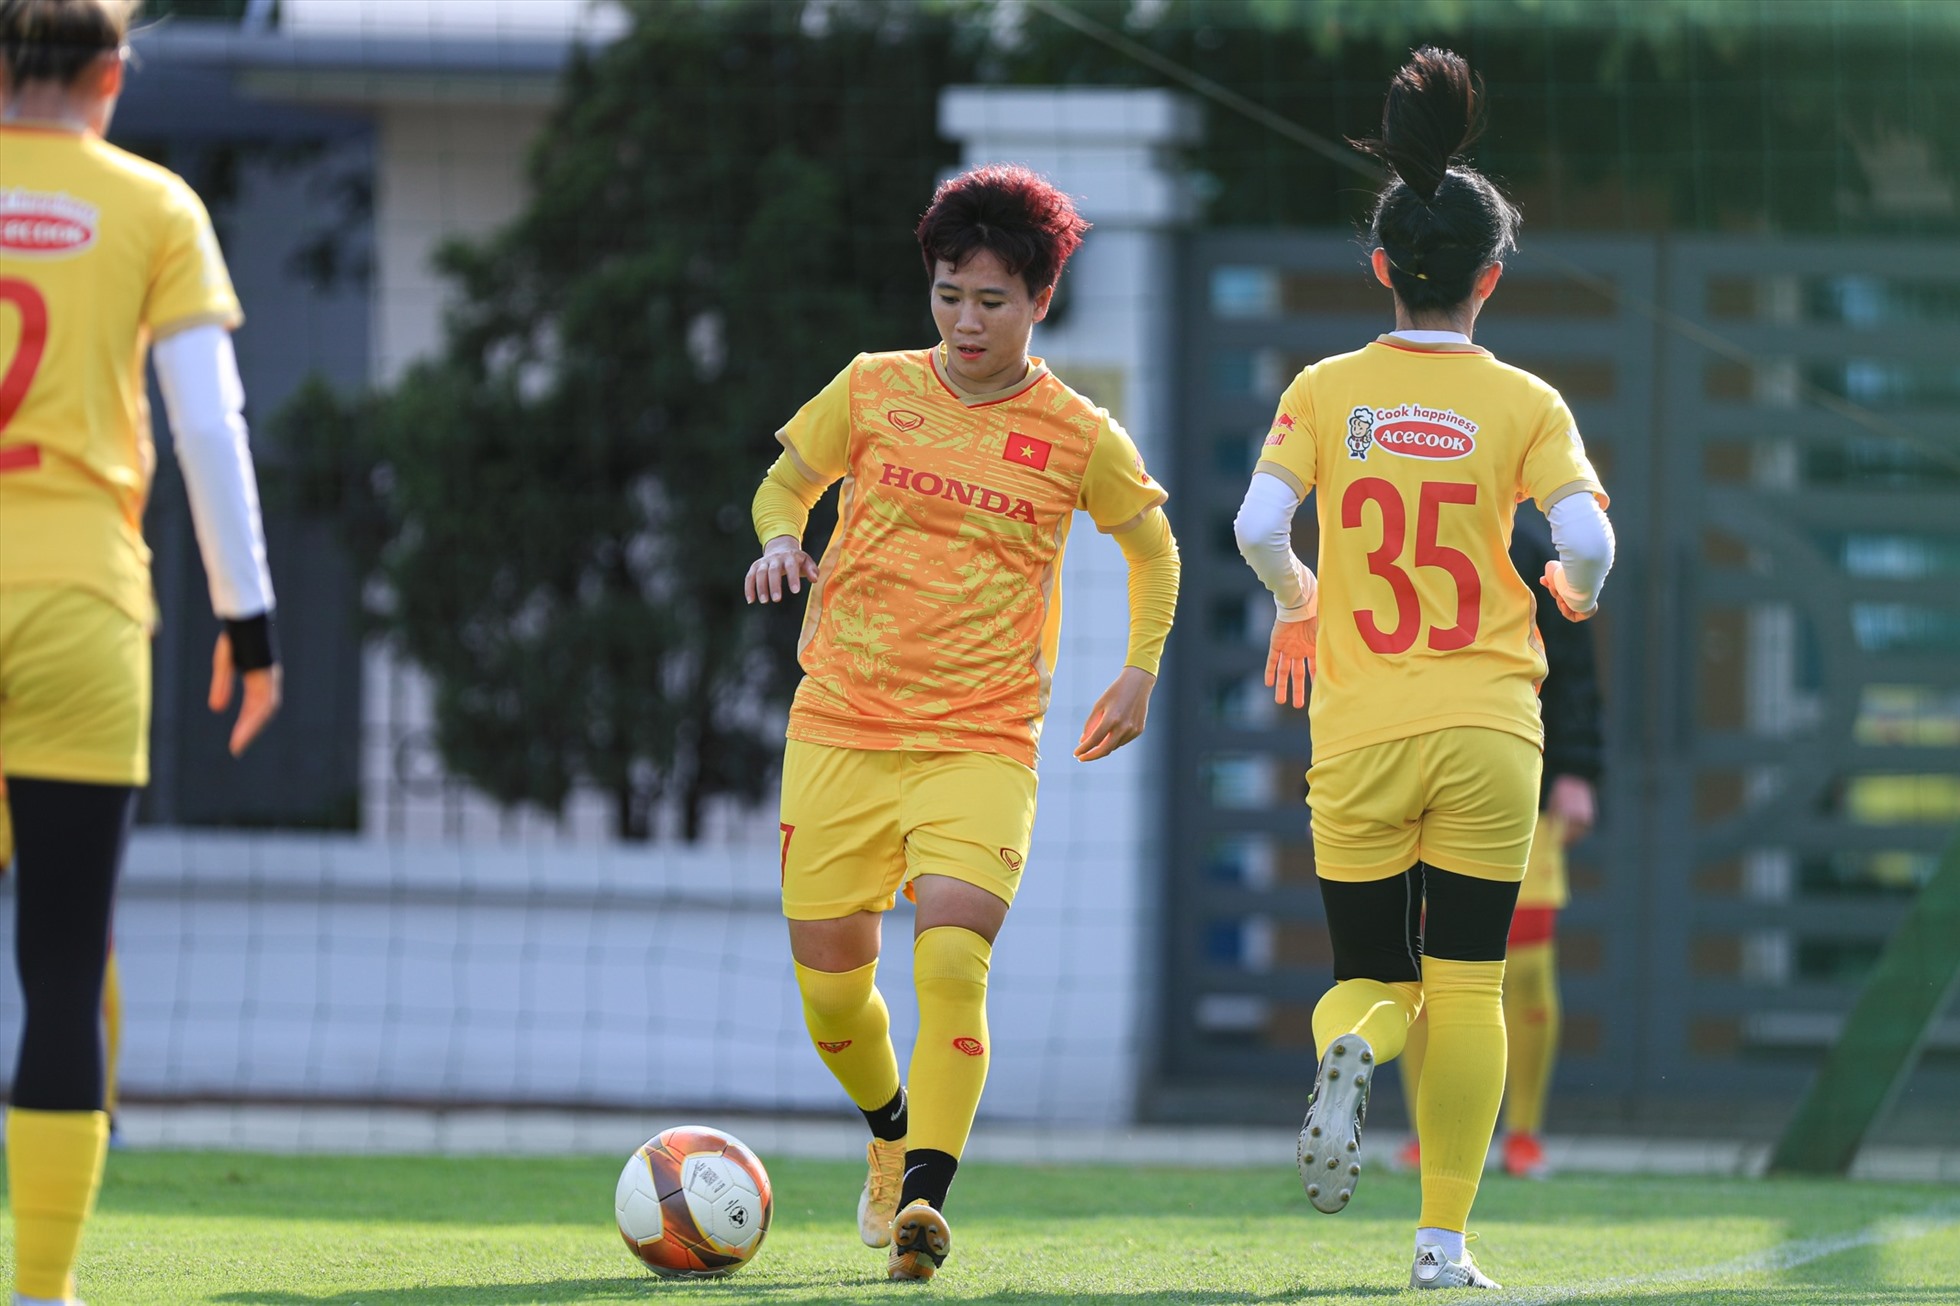 Buổi tập diễn ra trong không khí thoải mái. Dù nhiệt độ tại Hà Nội đã giảm nhưng thời tiết nắng nóng vẫn khiến các cầu thủ mất nhiều sức hơn khi tập luyện ngoài trời.